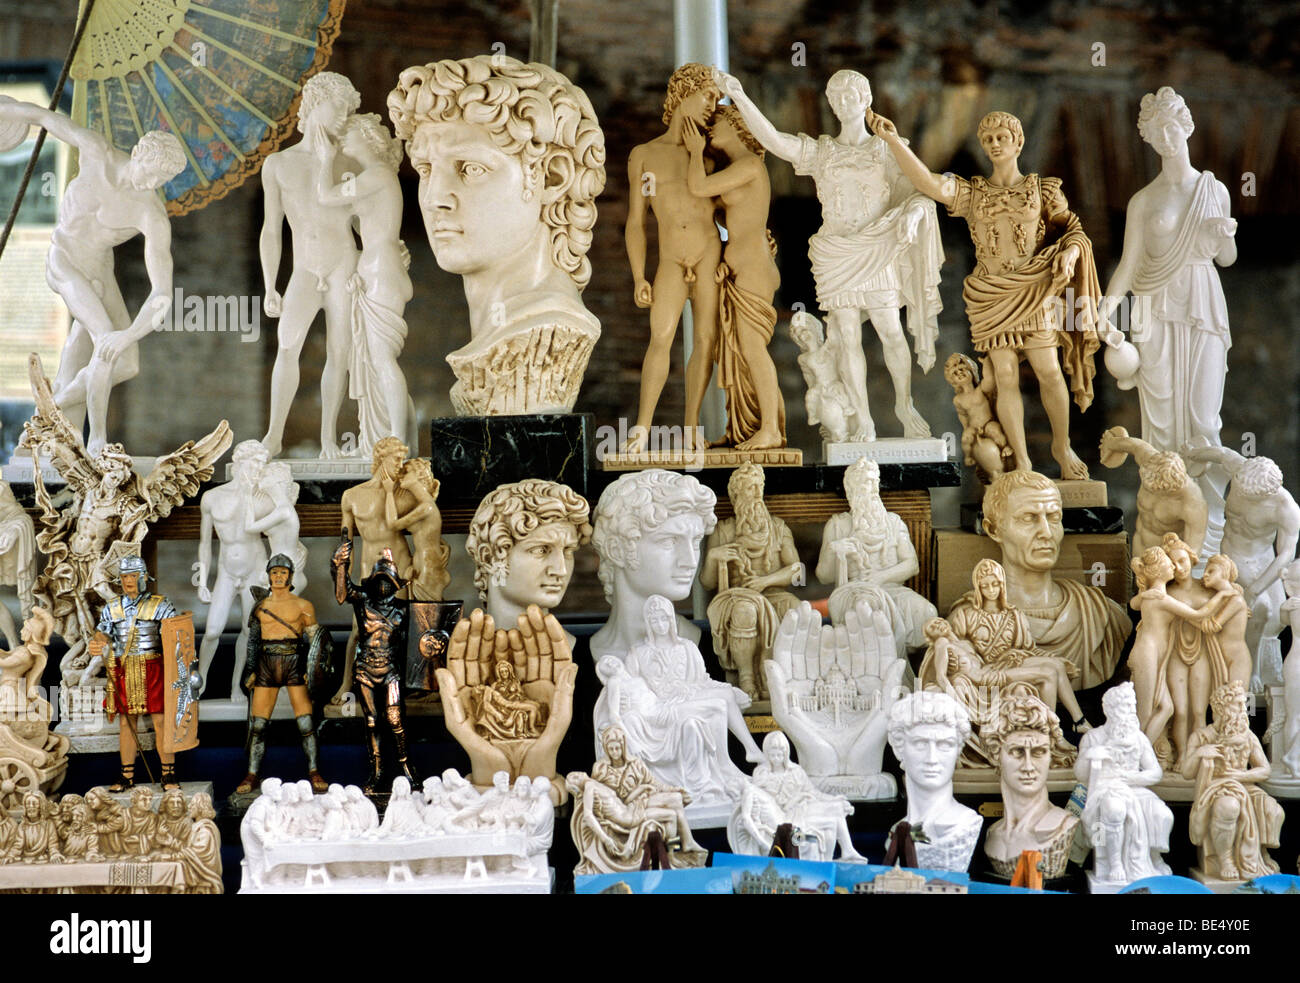 Souvenir stand, Rome, Lazio, Italy, Europe Stock Photo